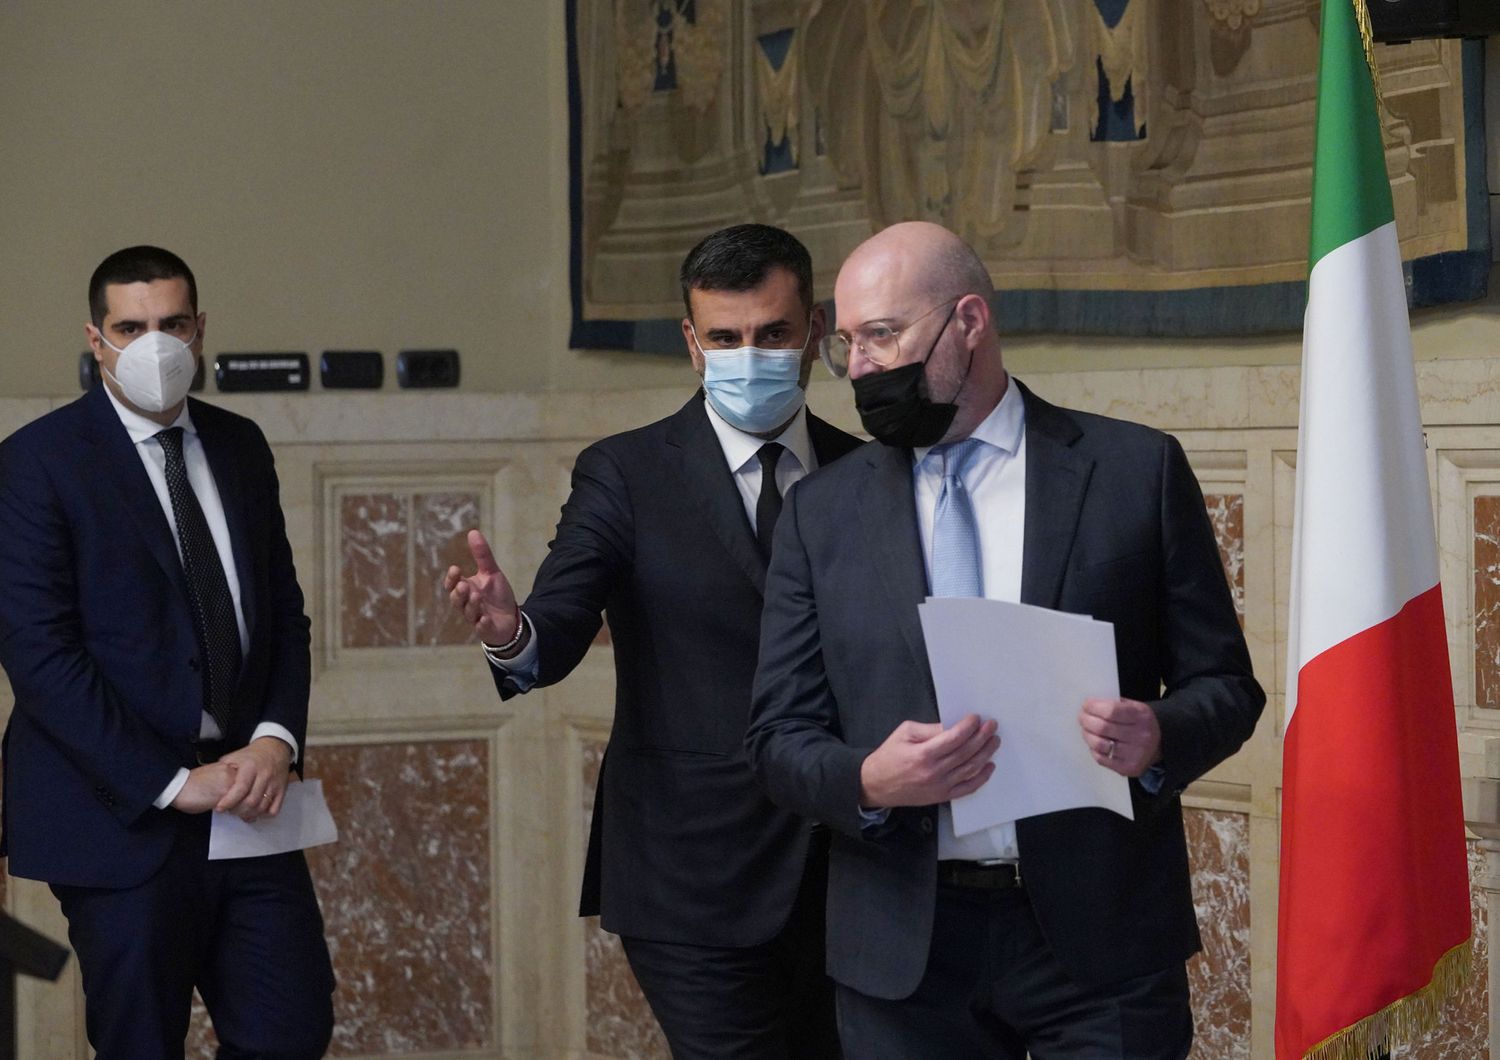 Stefano Bonaccini e Antonio Decaro al termine delle consultazioni con Draghi